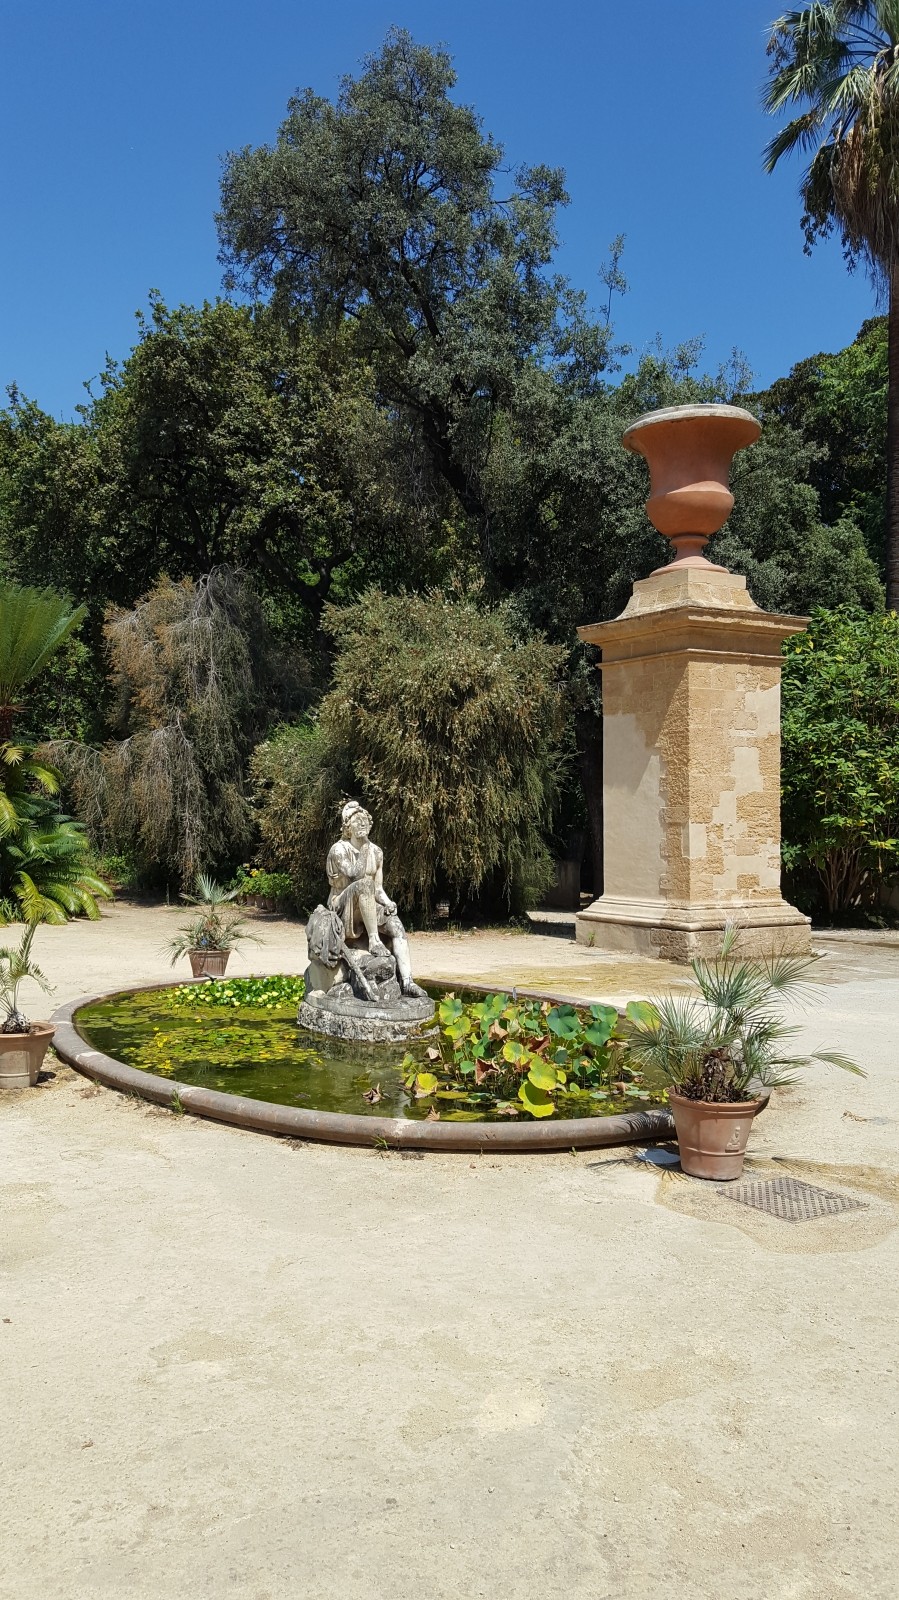 Fountain in Orto botanico di Palermo